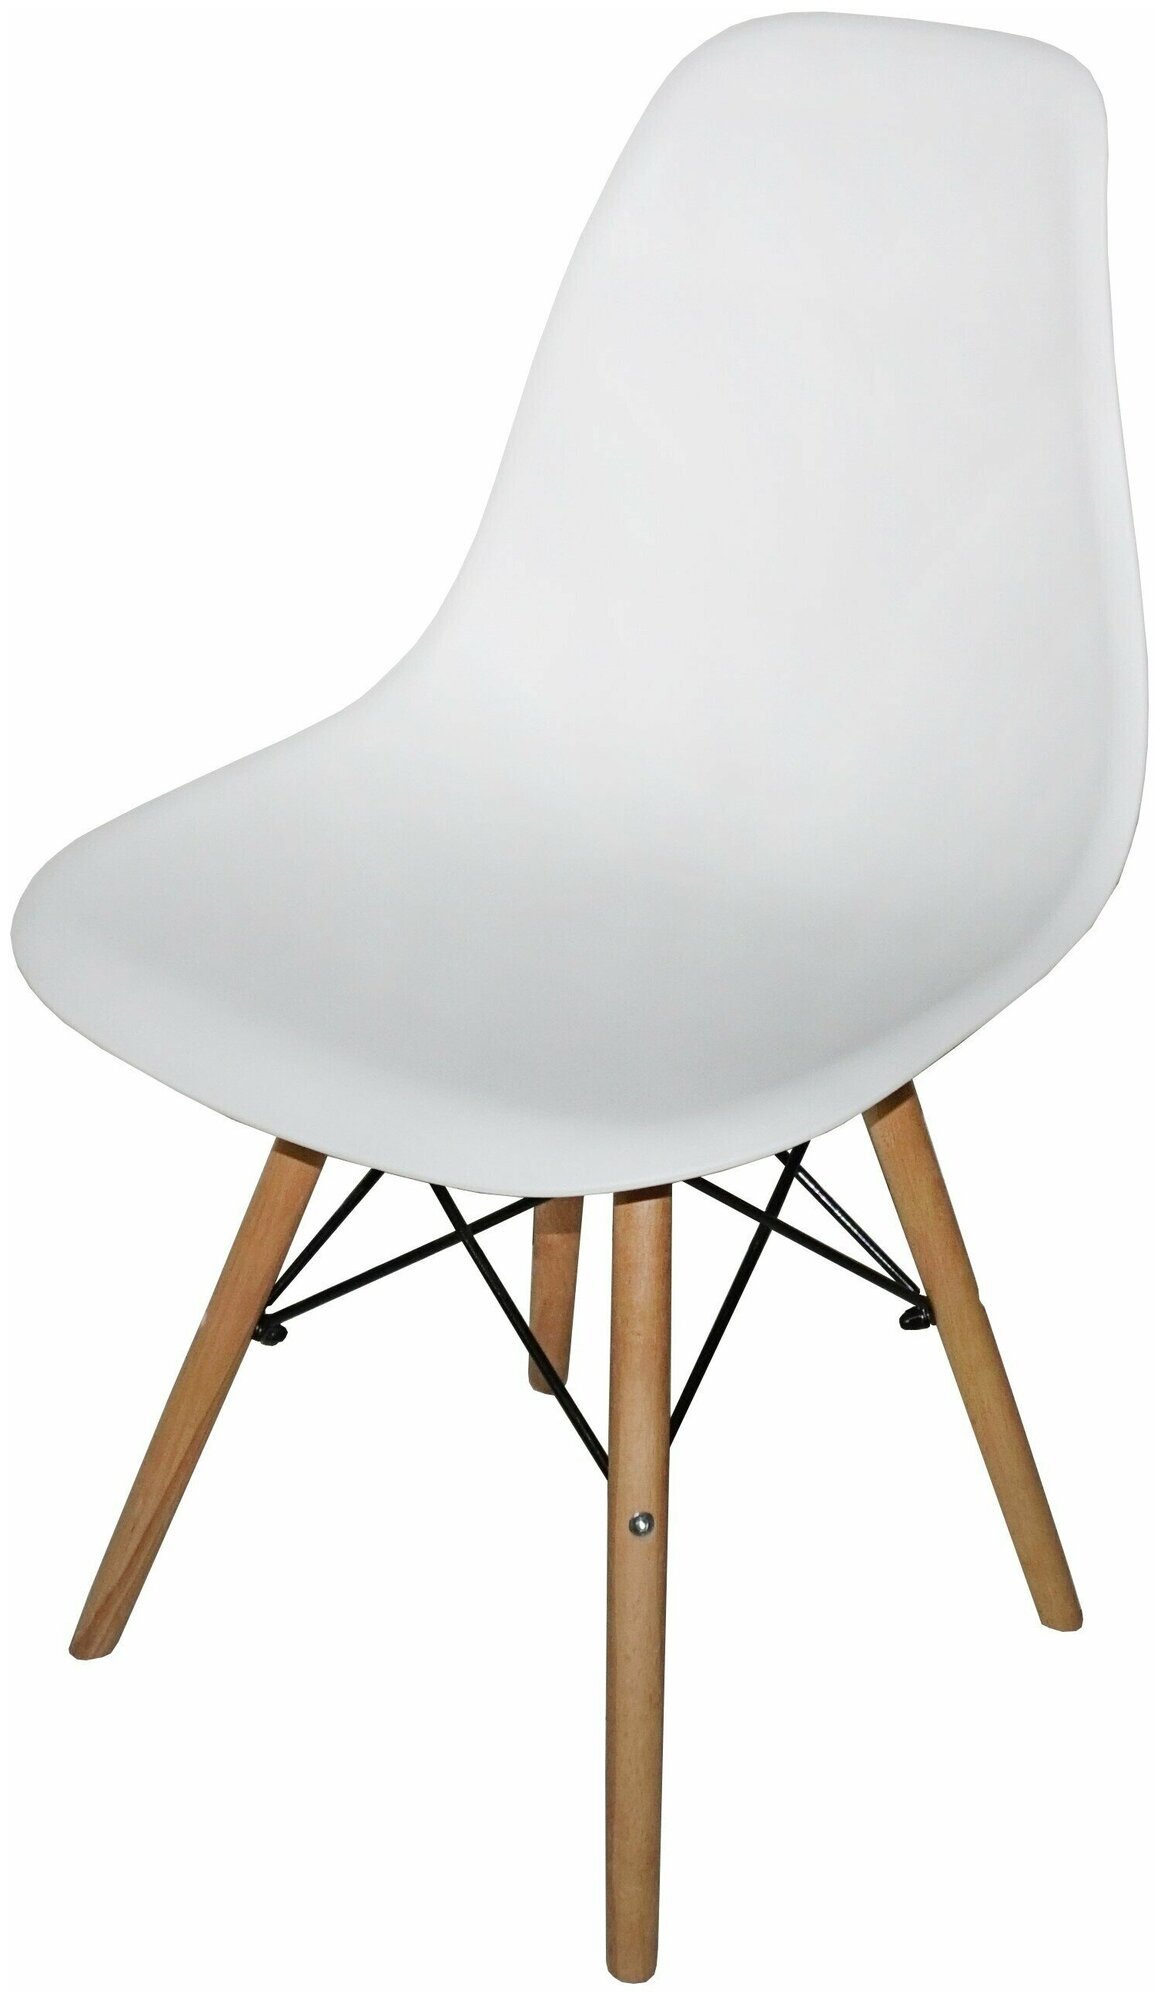 Обеденный стул A224 белый/деревянные ножки ИМП/BOB